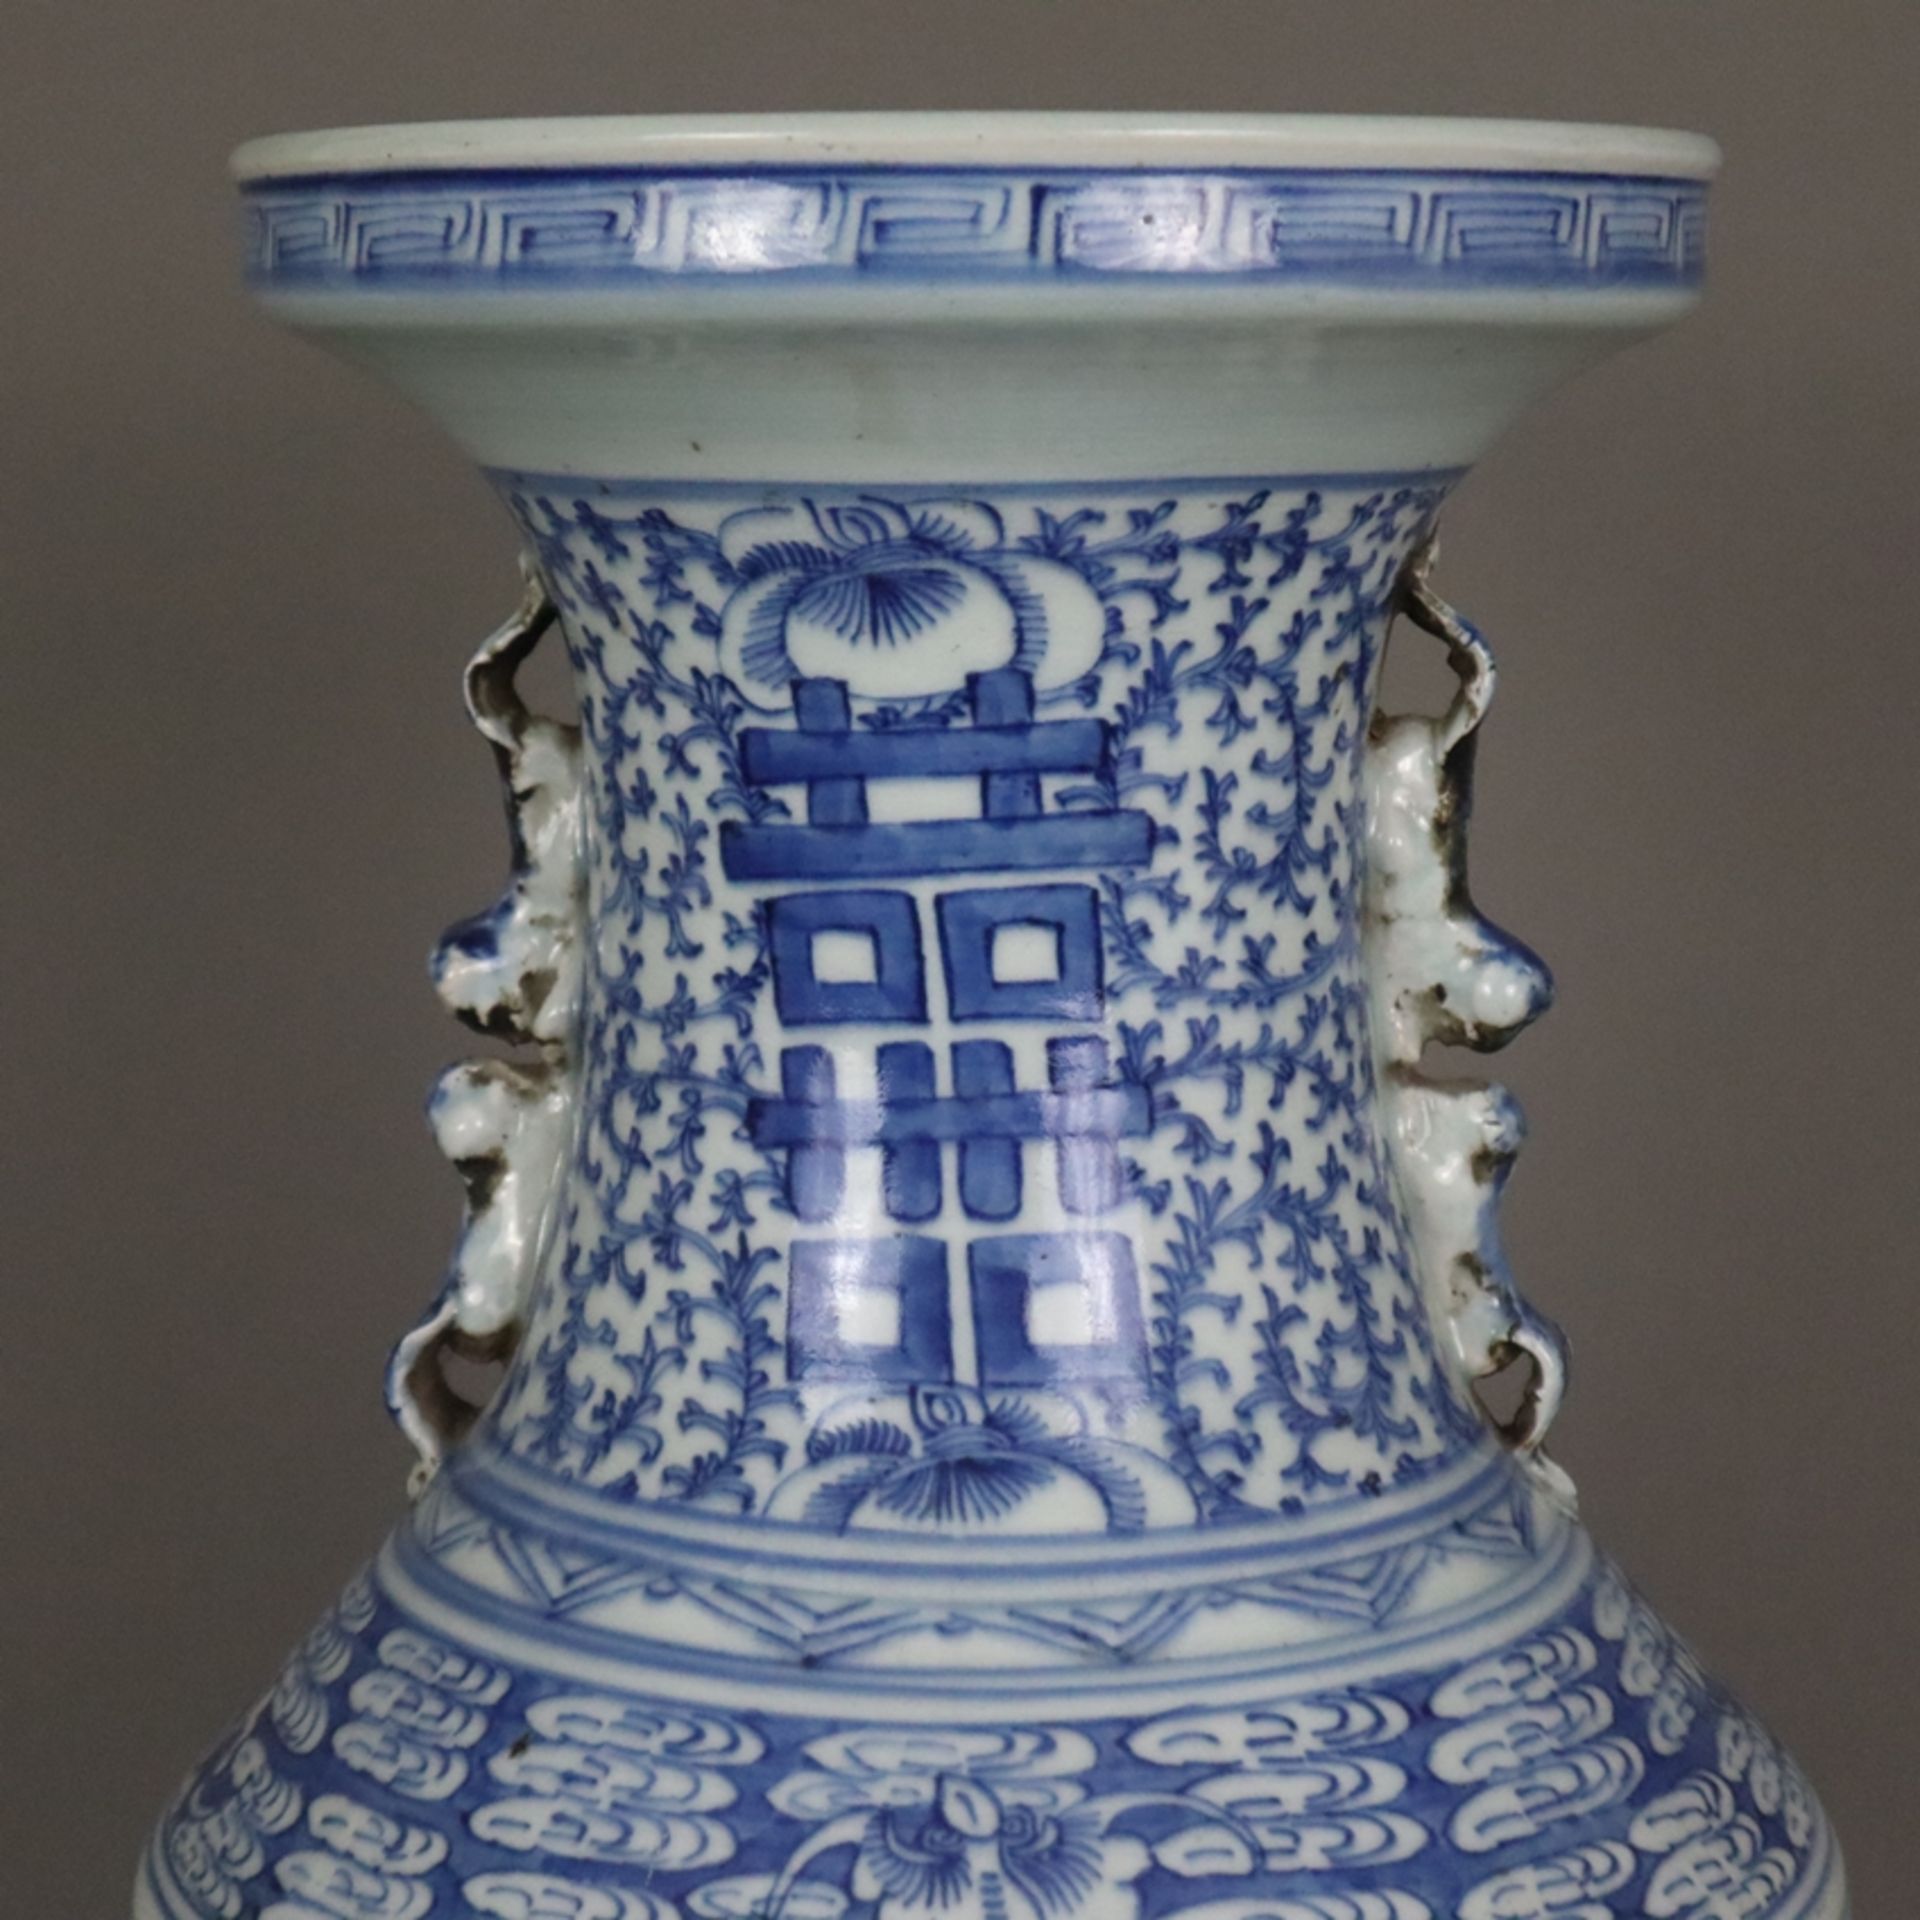 Blau-weiße Bodenvase - China, späte Qing-Dynastie, Tongzhi 1862-1875, sog. „Hochzeitsvase“, auf der - Bild 2 aus 14